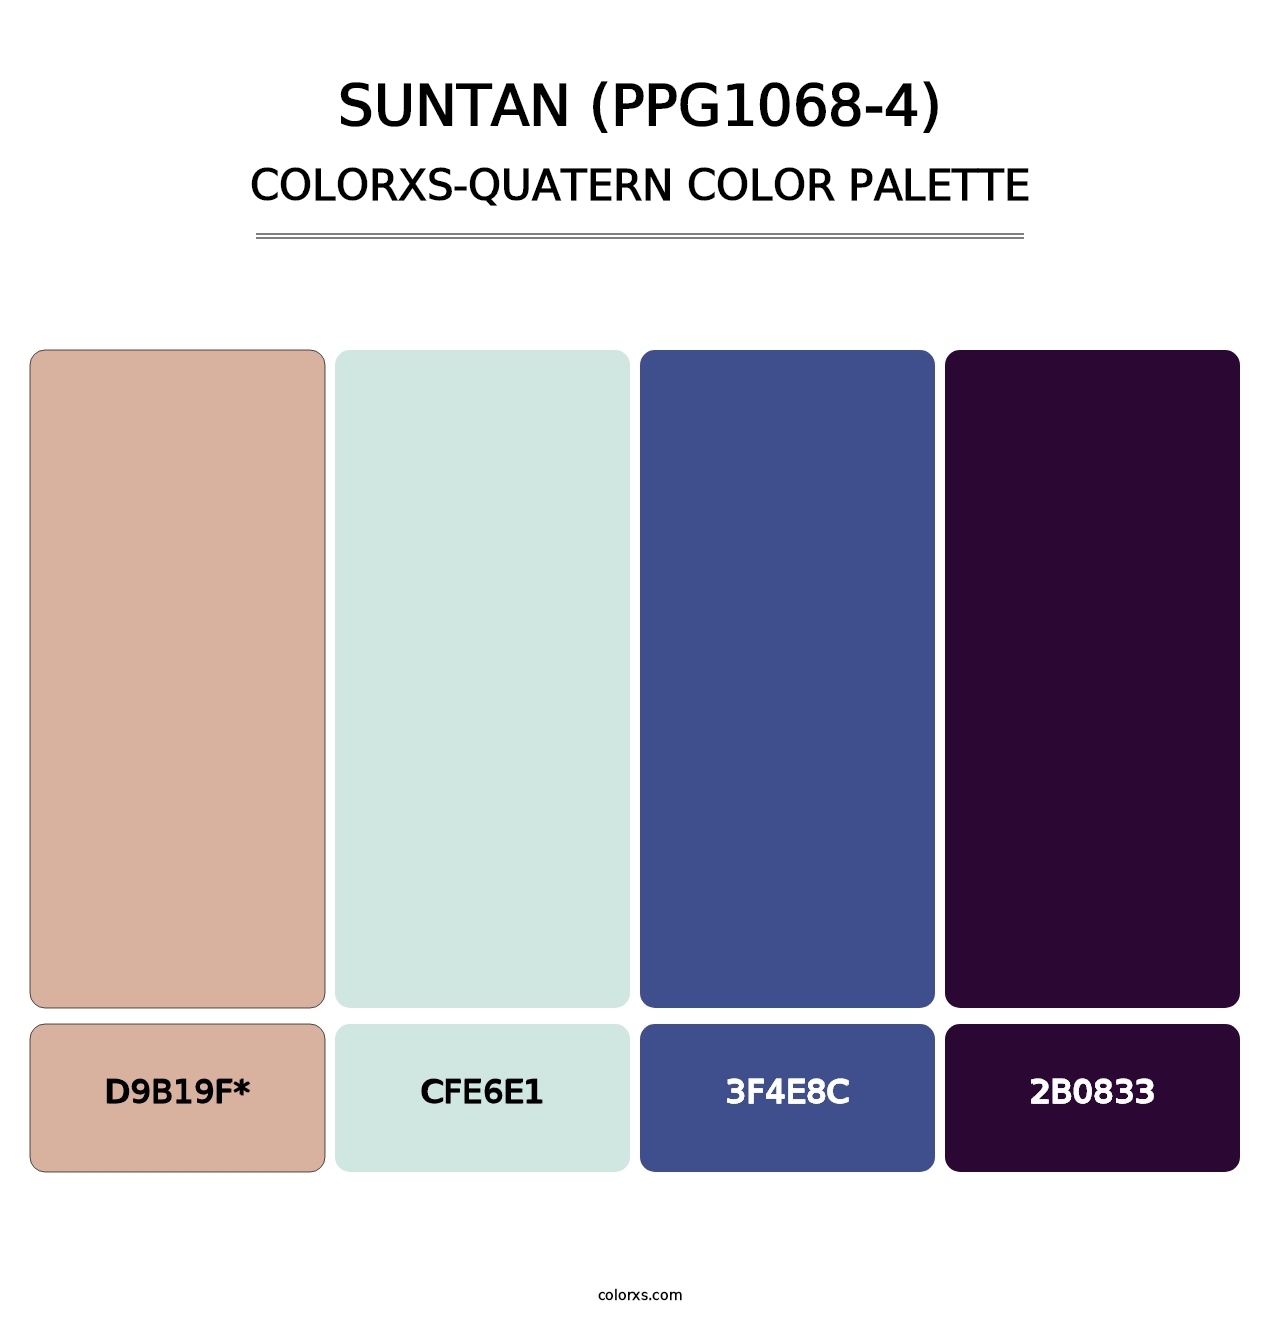 Suntan (PPG1068-4) - Colorxs Quatern Palette